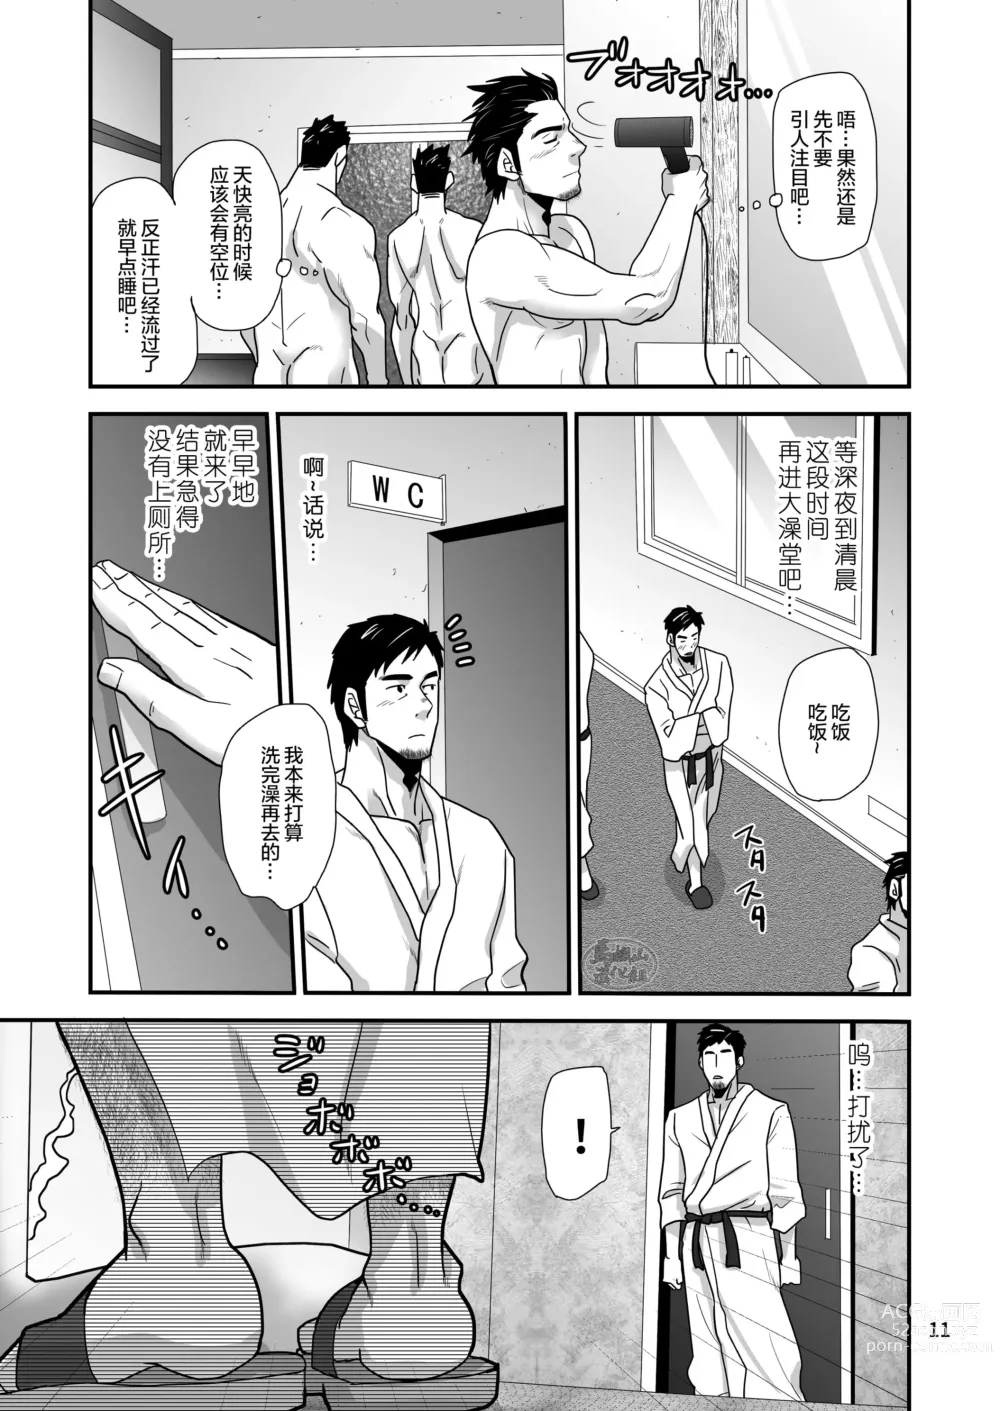 Page 11 of manga 松武互悦同衆!!_旅の恥はヌキすて